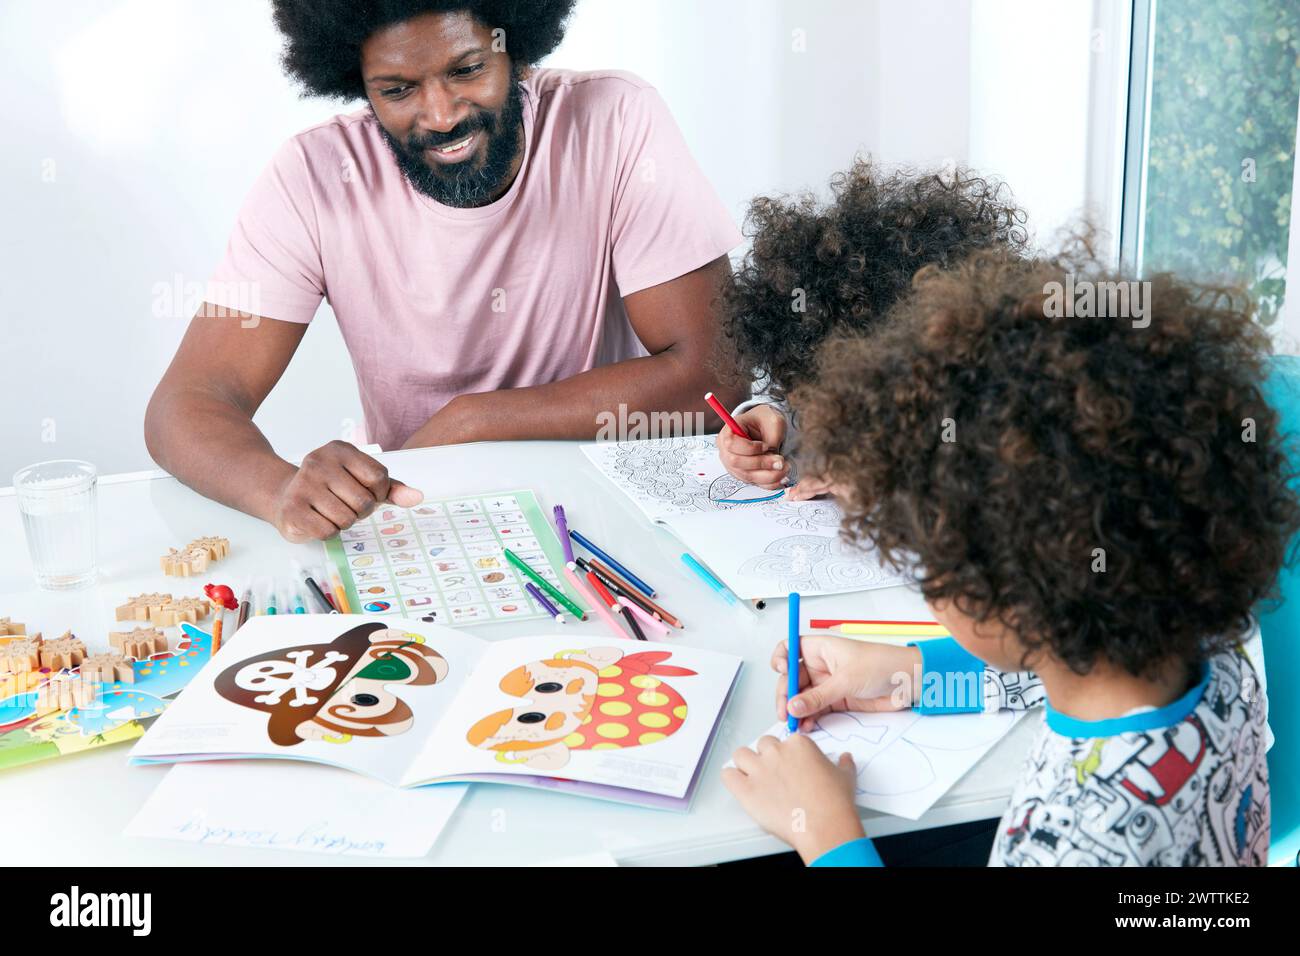 Adultes et enfants engagés dans des activités de coloriage Banque D'Images